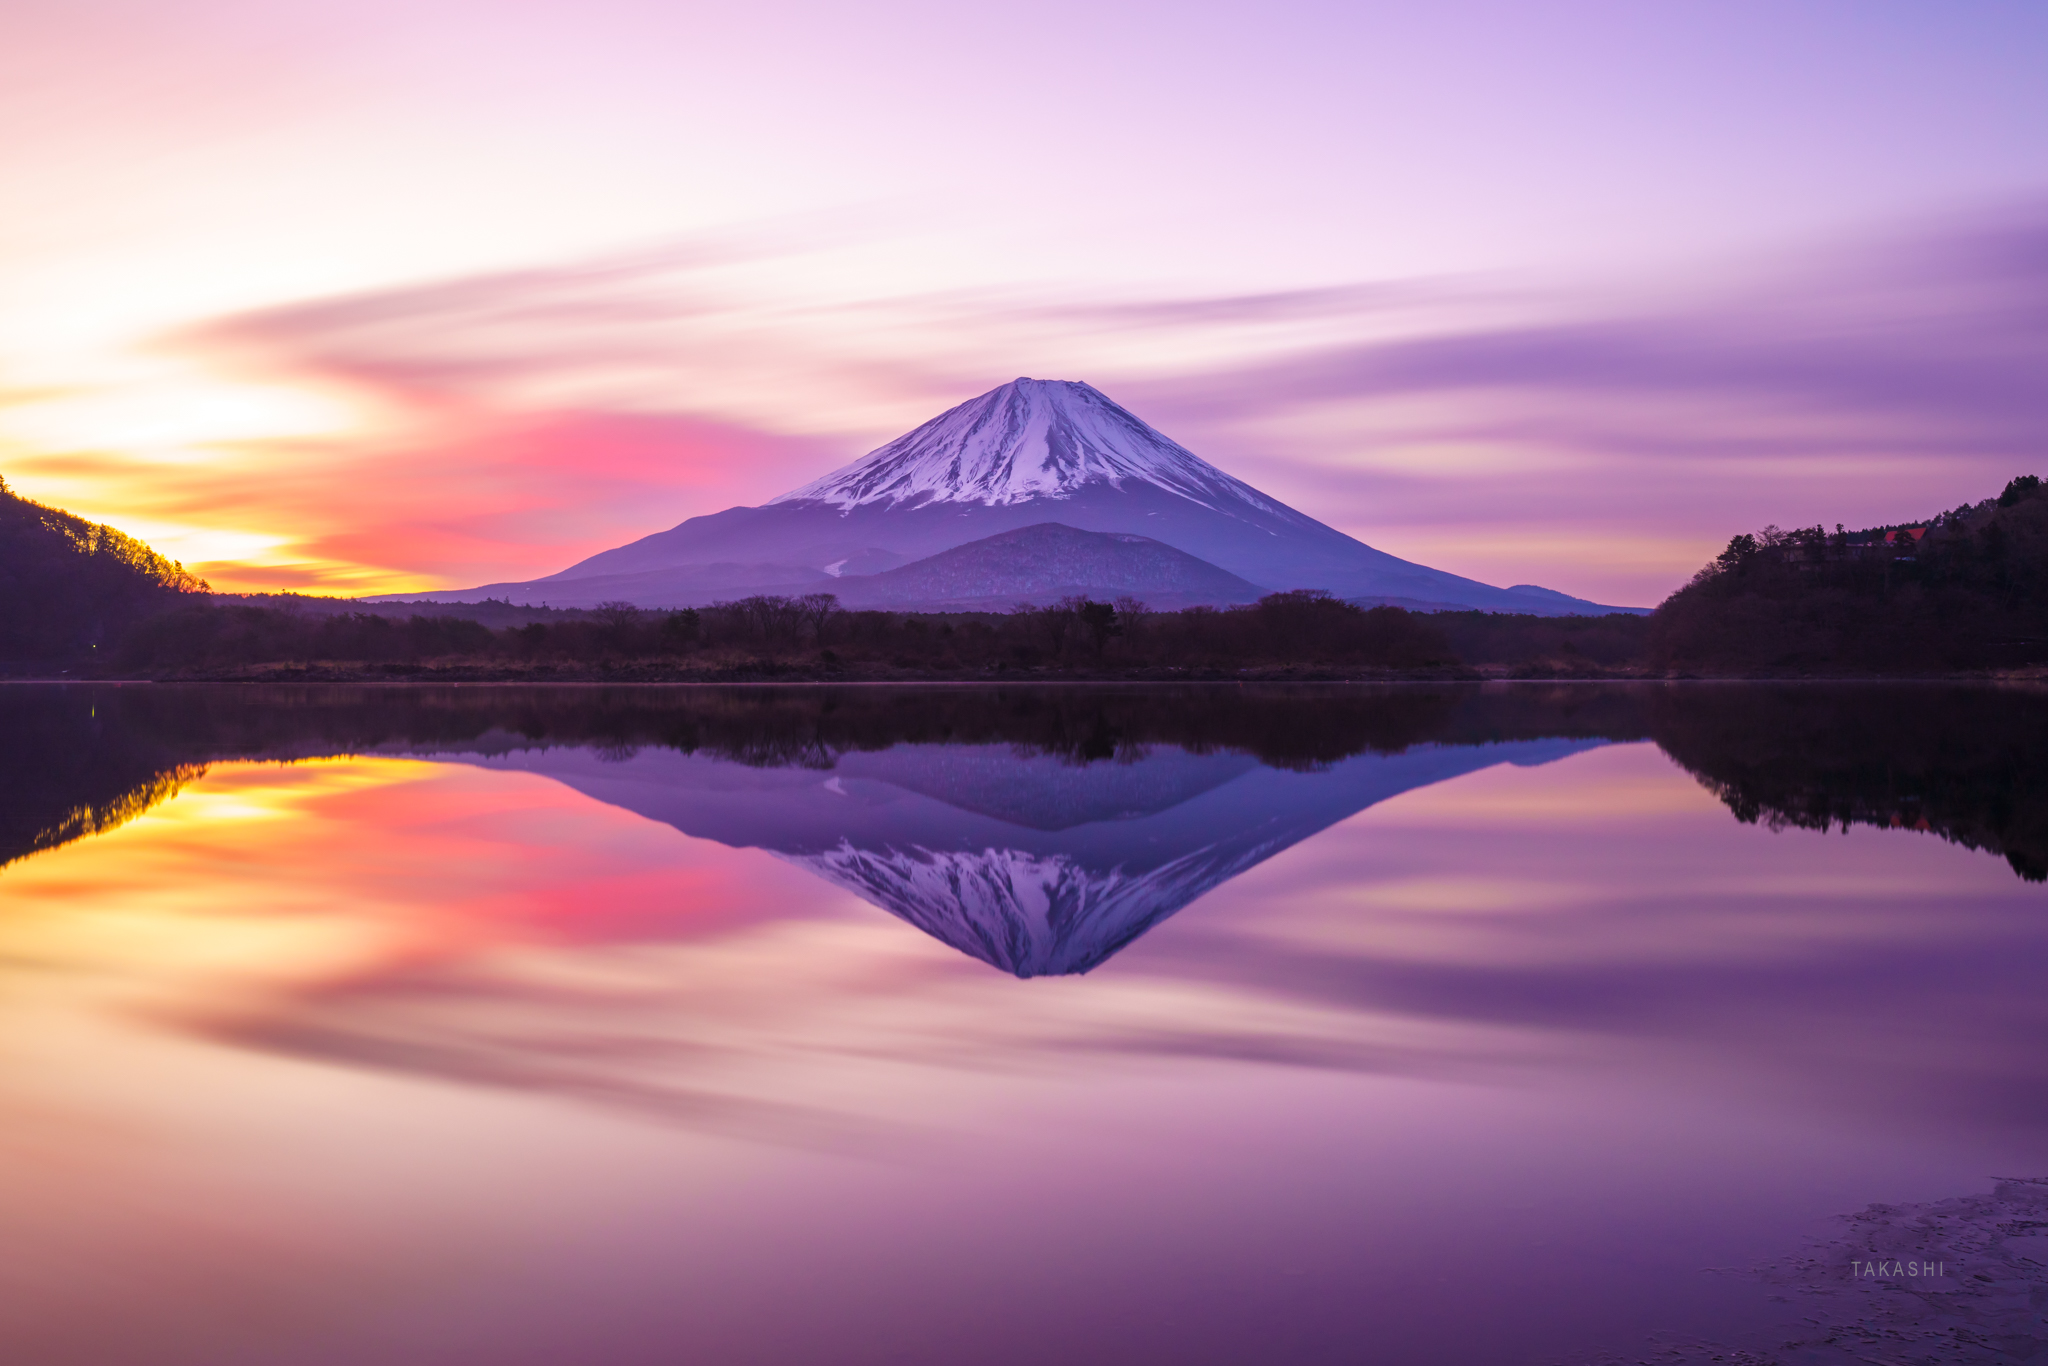 山梨県富士山世界遺産センターで「長時間露光撮影」体験教室が開催されます